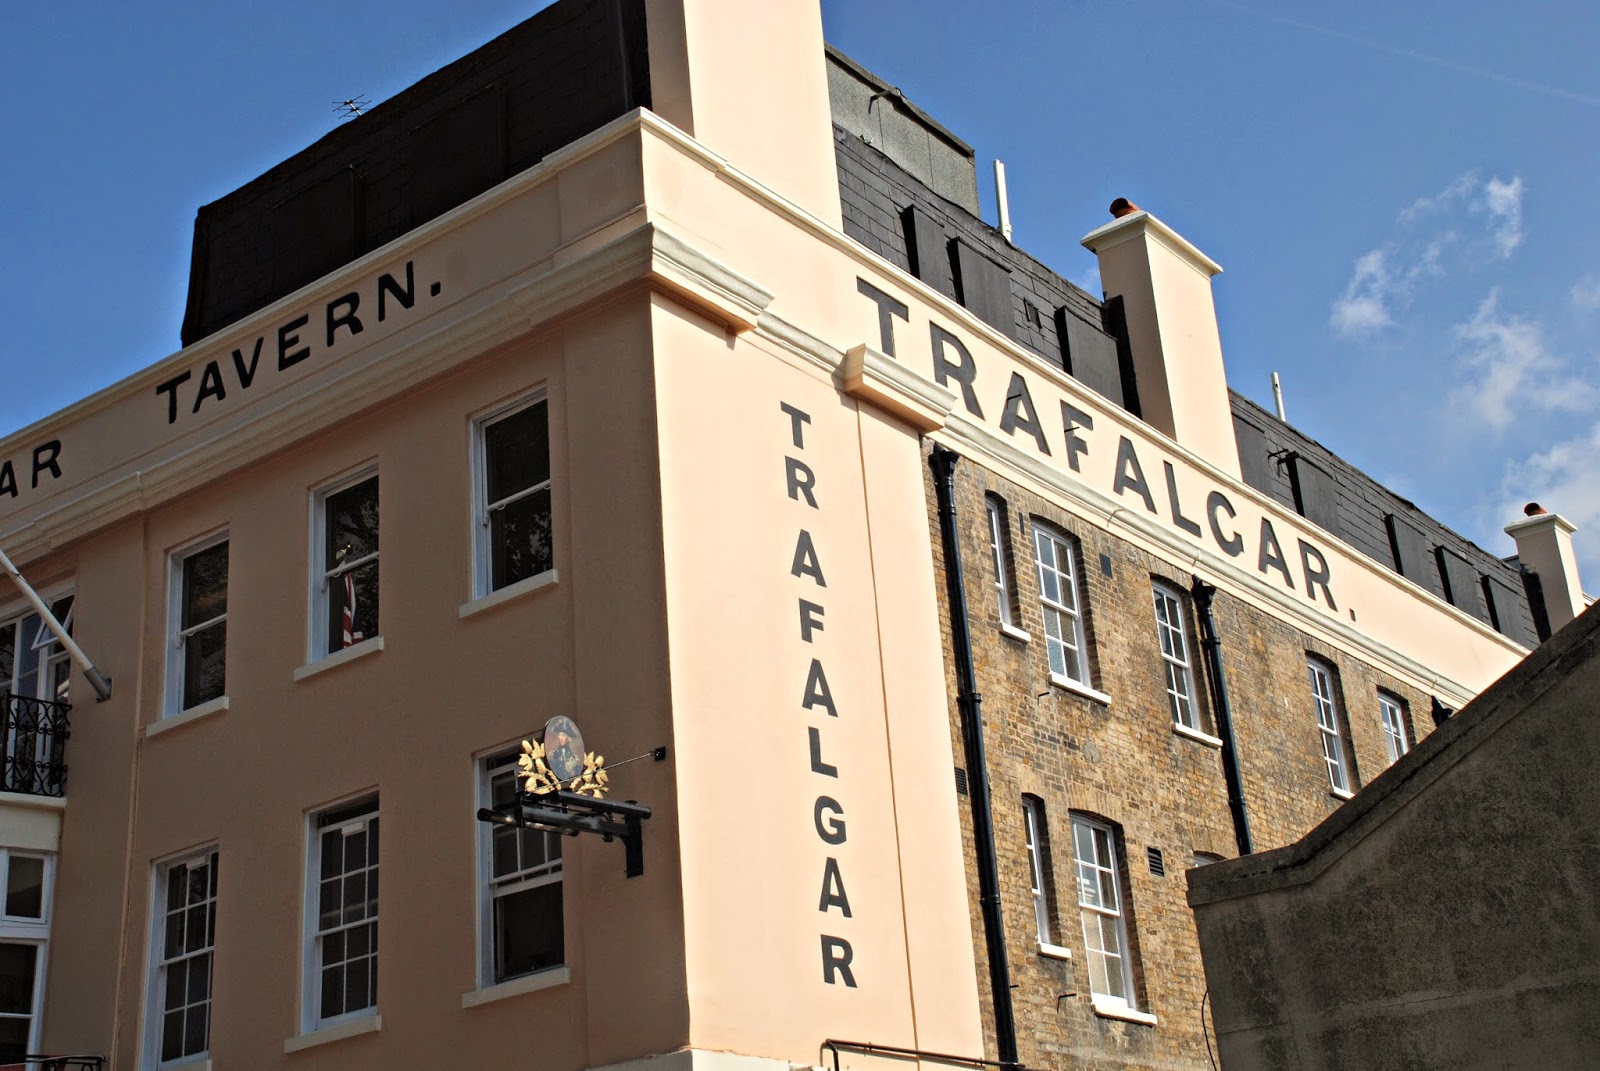 Trafalgar Tavern, Greenwich